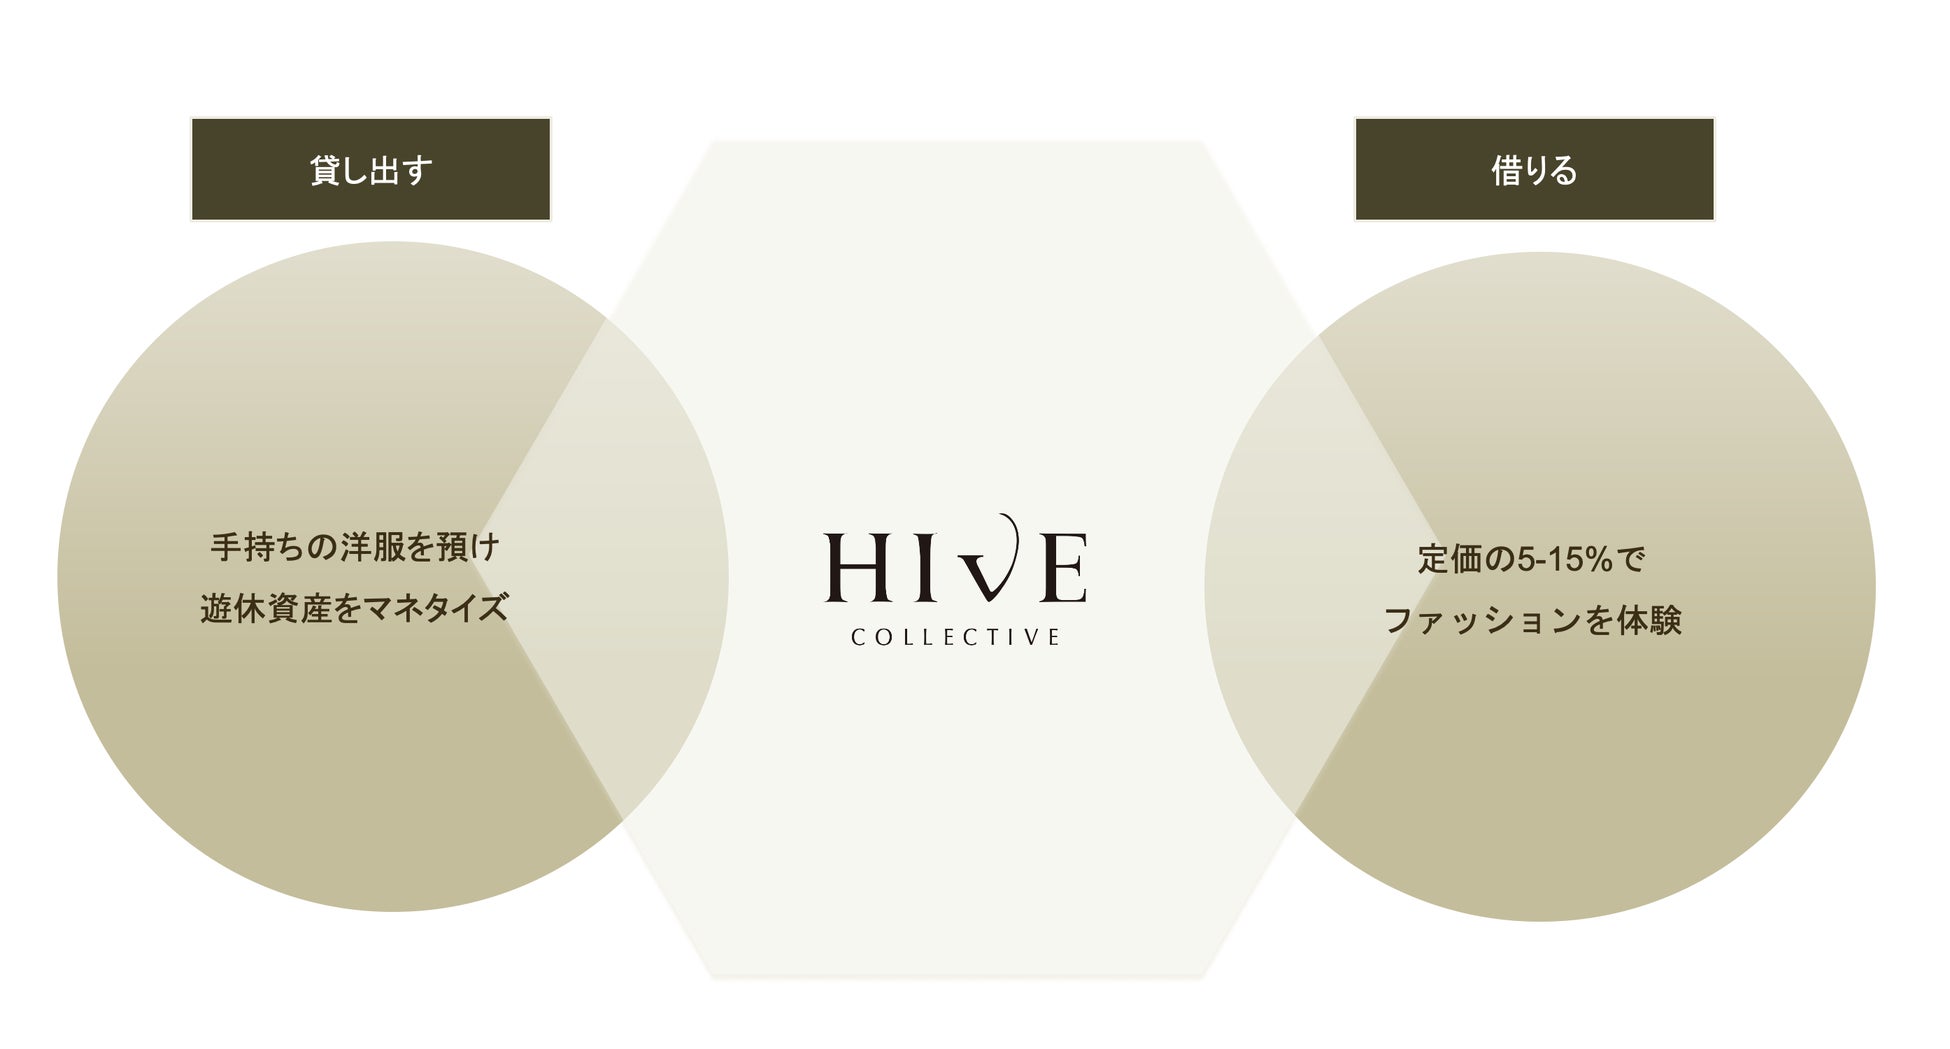 ラグジュアリーファッションのシェアリングプラットフォーム「HIVE Collective」シードラウンドで約1.2億円の資金調達を実施のサブ画像2